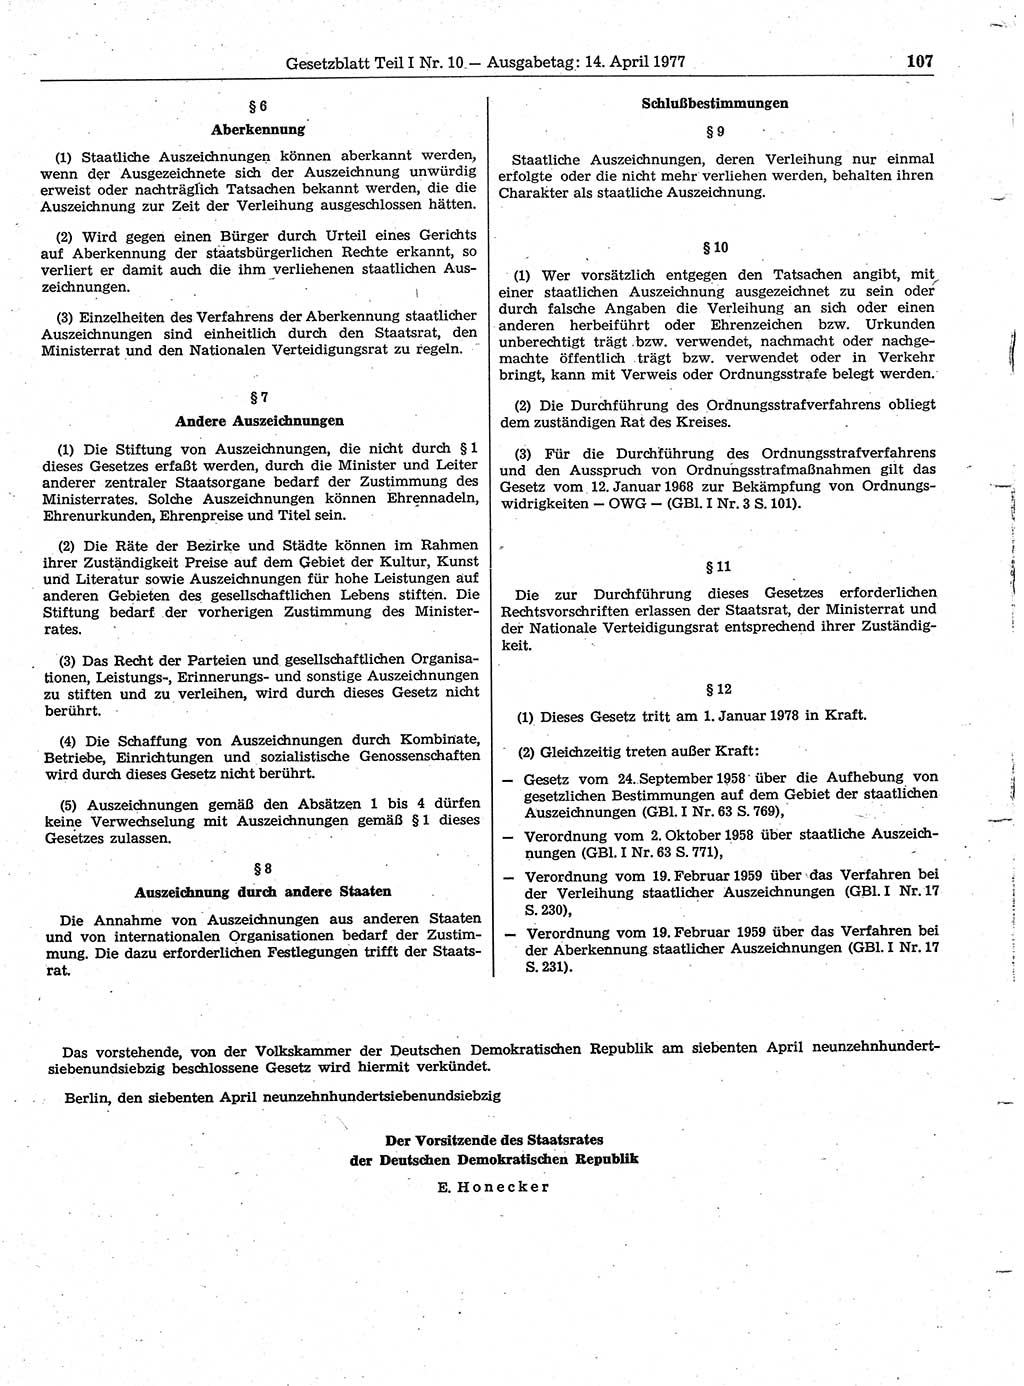 Gesetzblatt (GBl.) der Deutschen Demokratischen Republik (DDR) Teil Ⅰ 1977, Seite 107 (GBl. DDR Ⅰ 1977, S. 107)